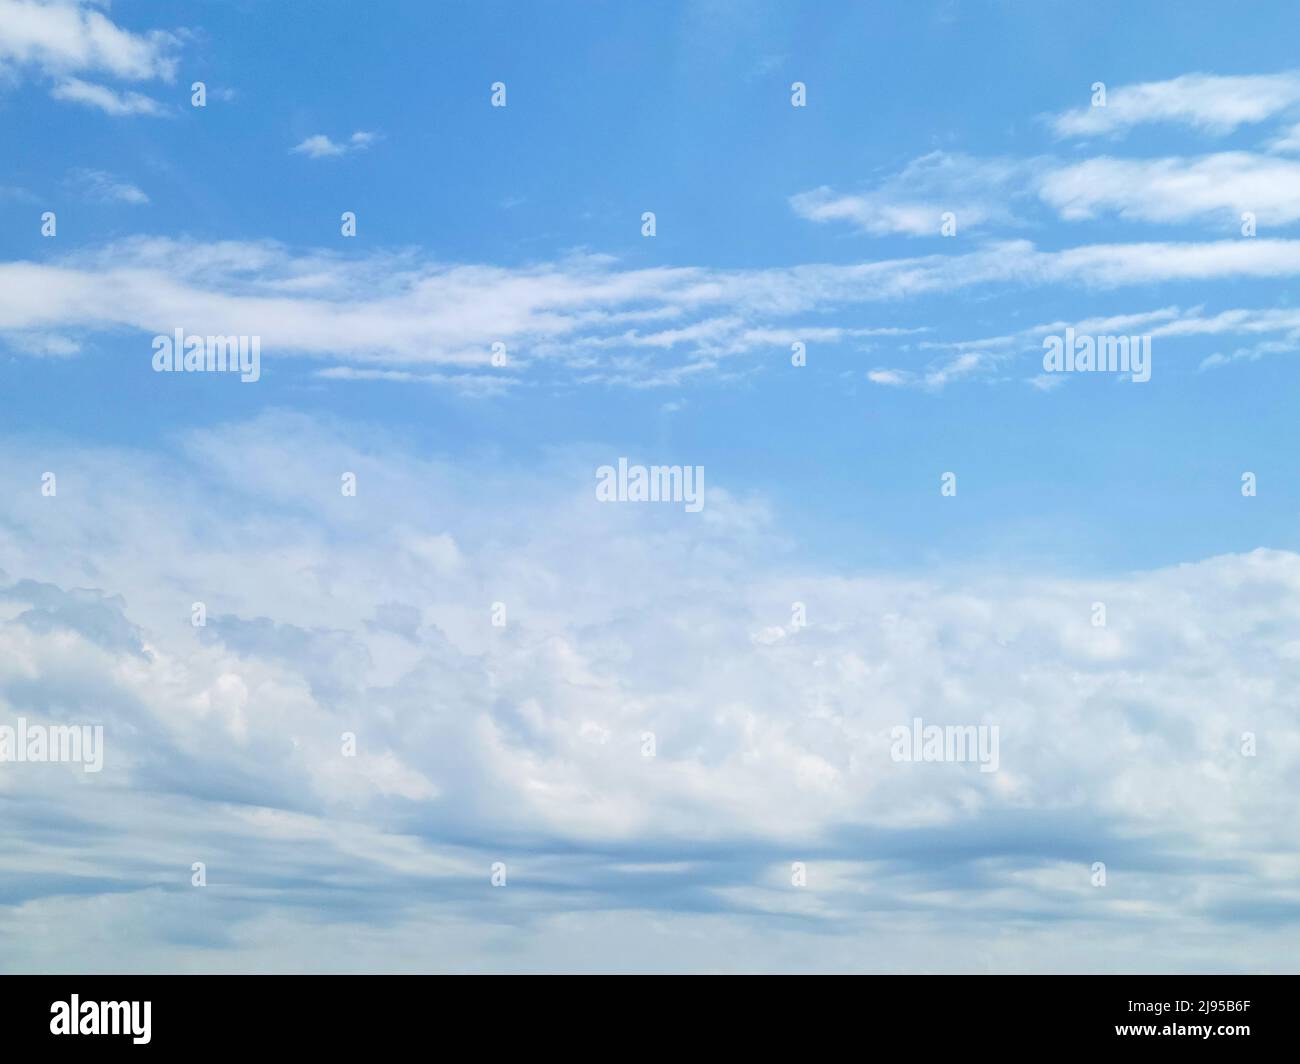 Varias formas de nubes blancas en el cielo azul de verano Foto de stock